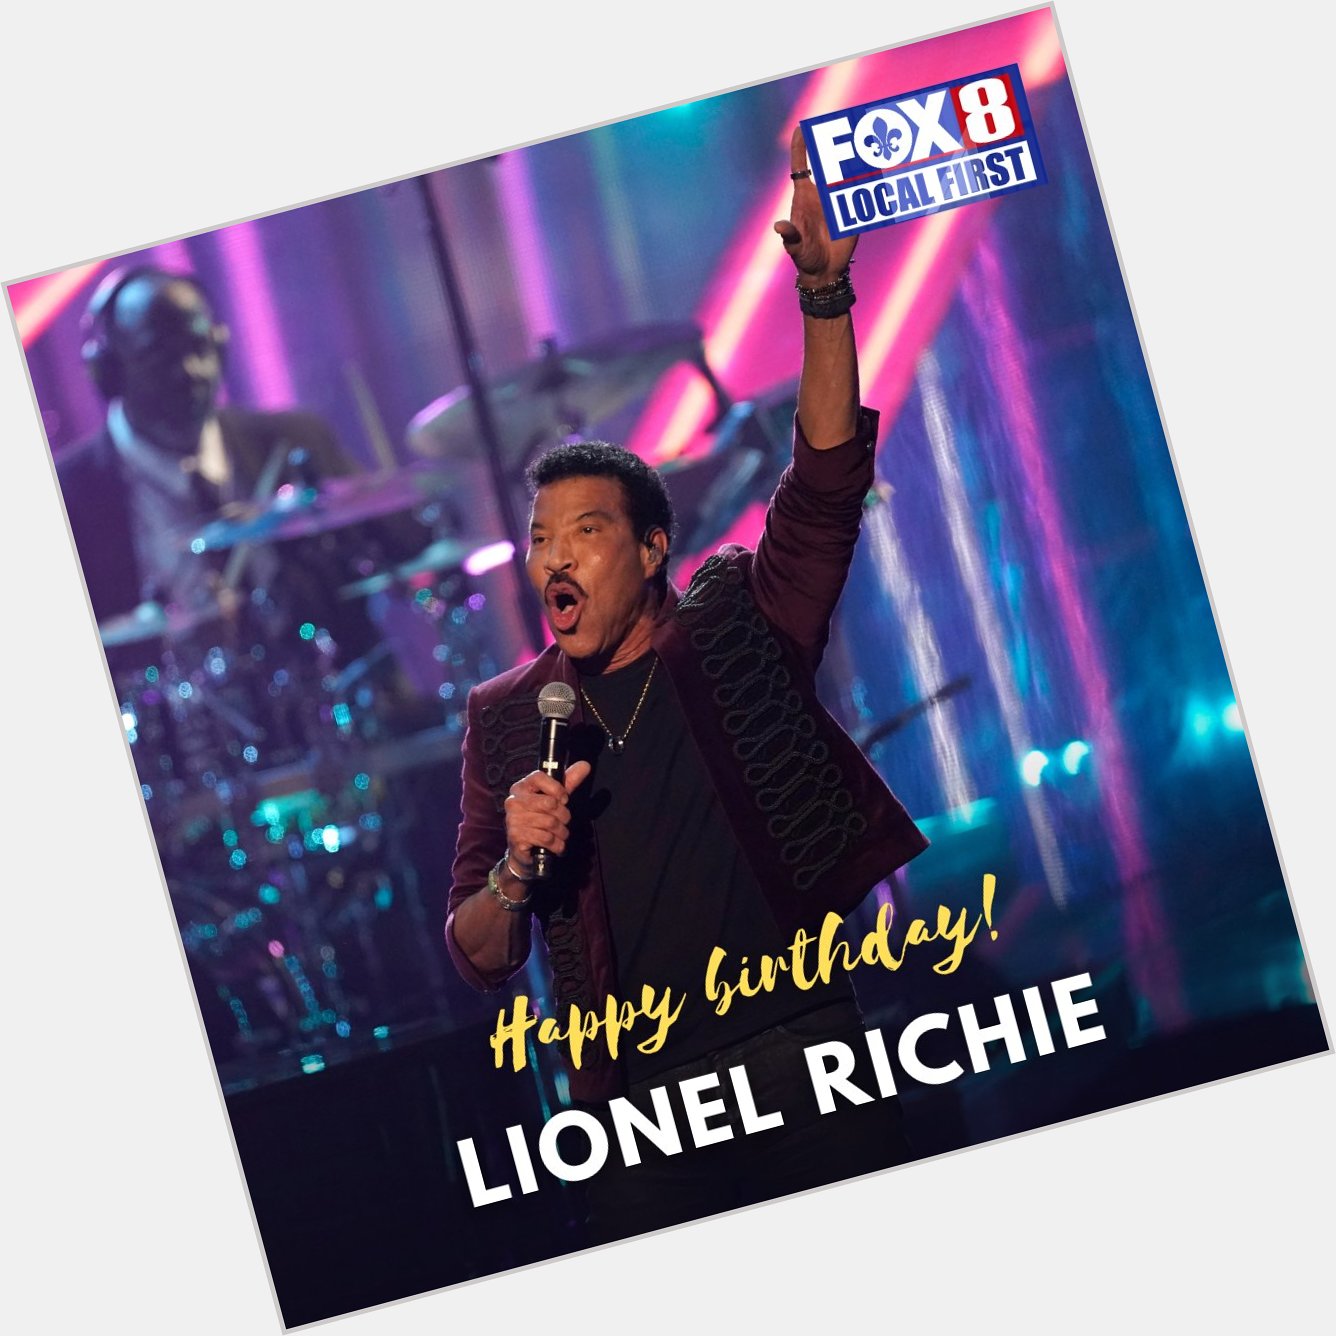 Happy 74th birthday to singer Lionel Richie! 